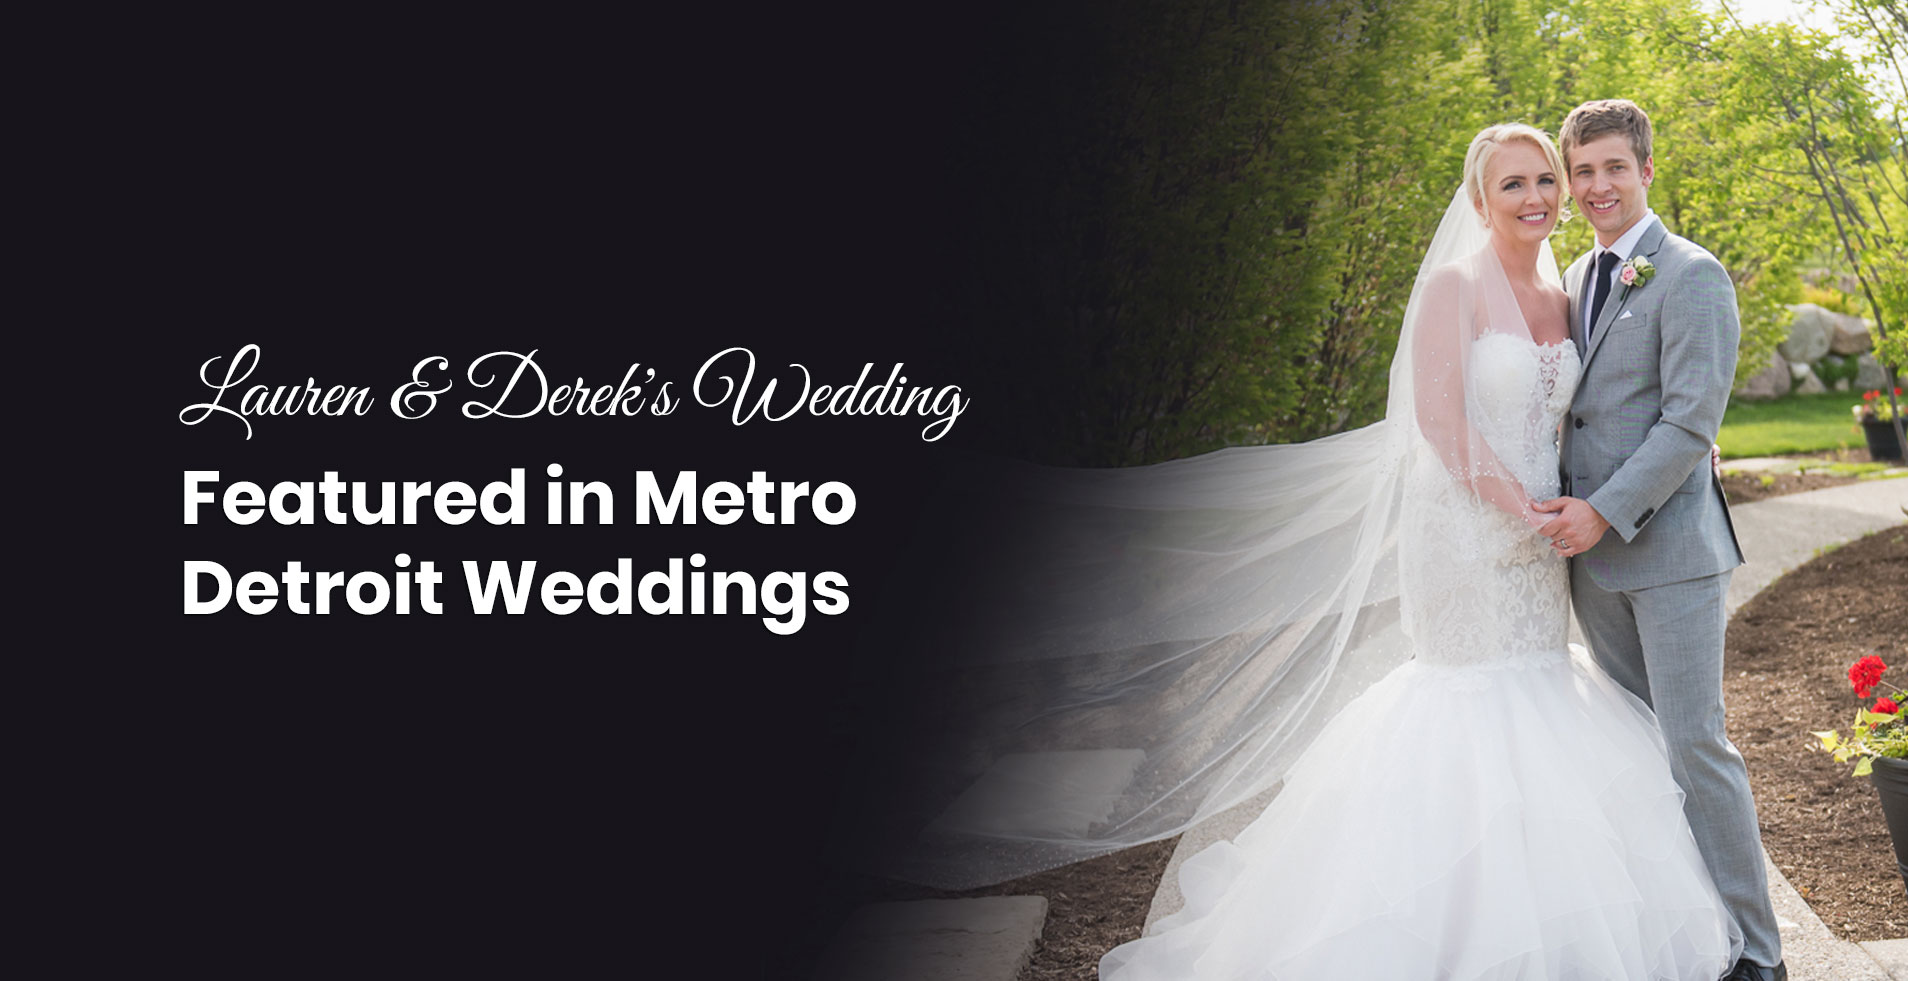 Lauren & Derek's Wedding Featured in Metro Detroit Weddings